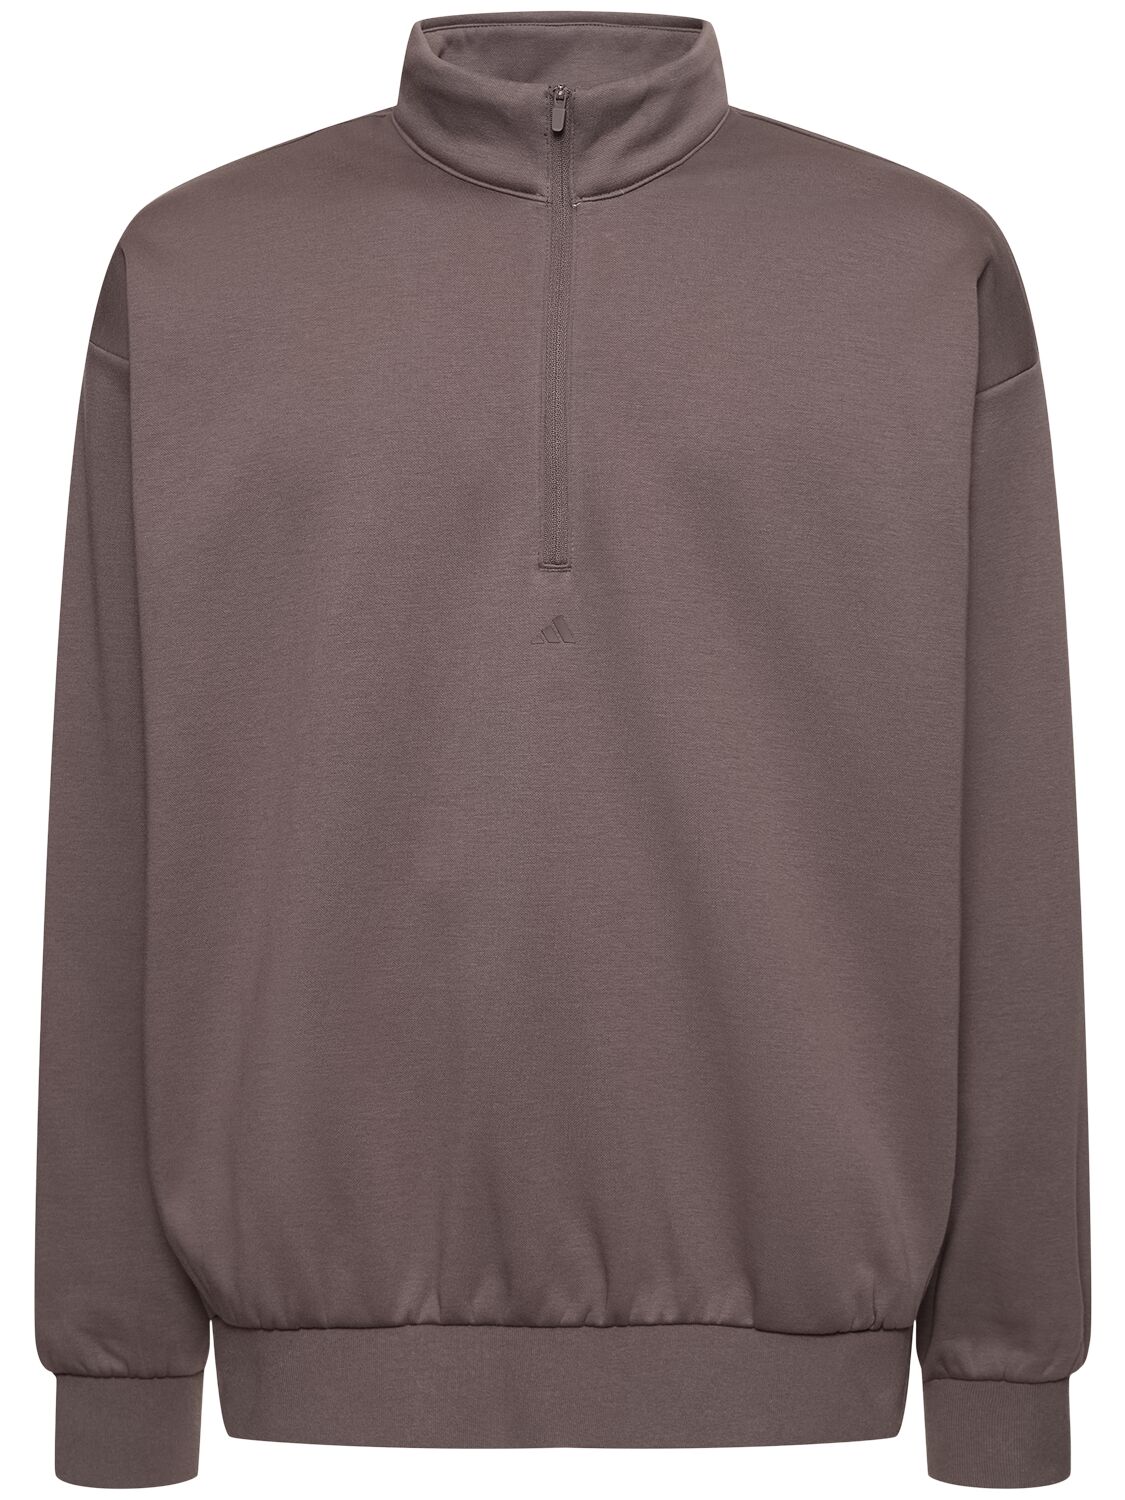 Image of Basketball Half-zip Sweatshirt